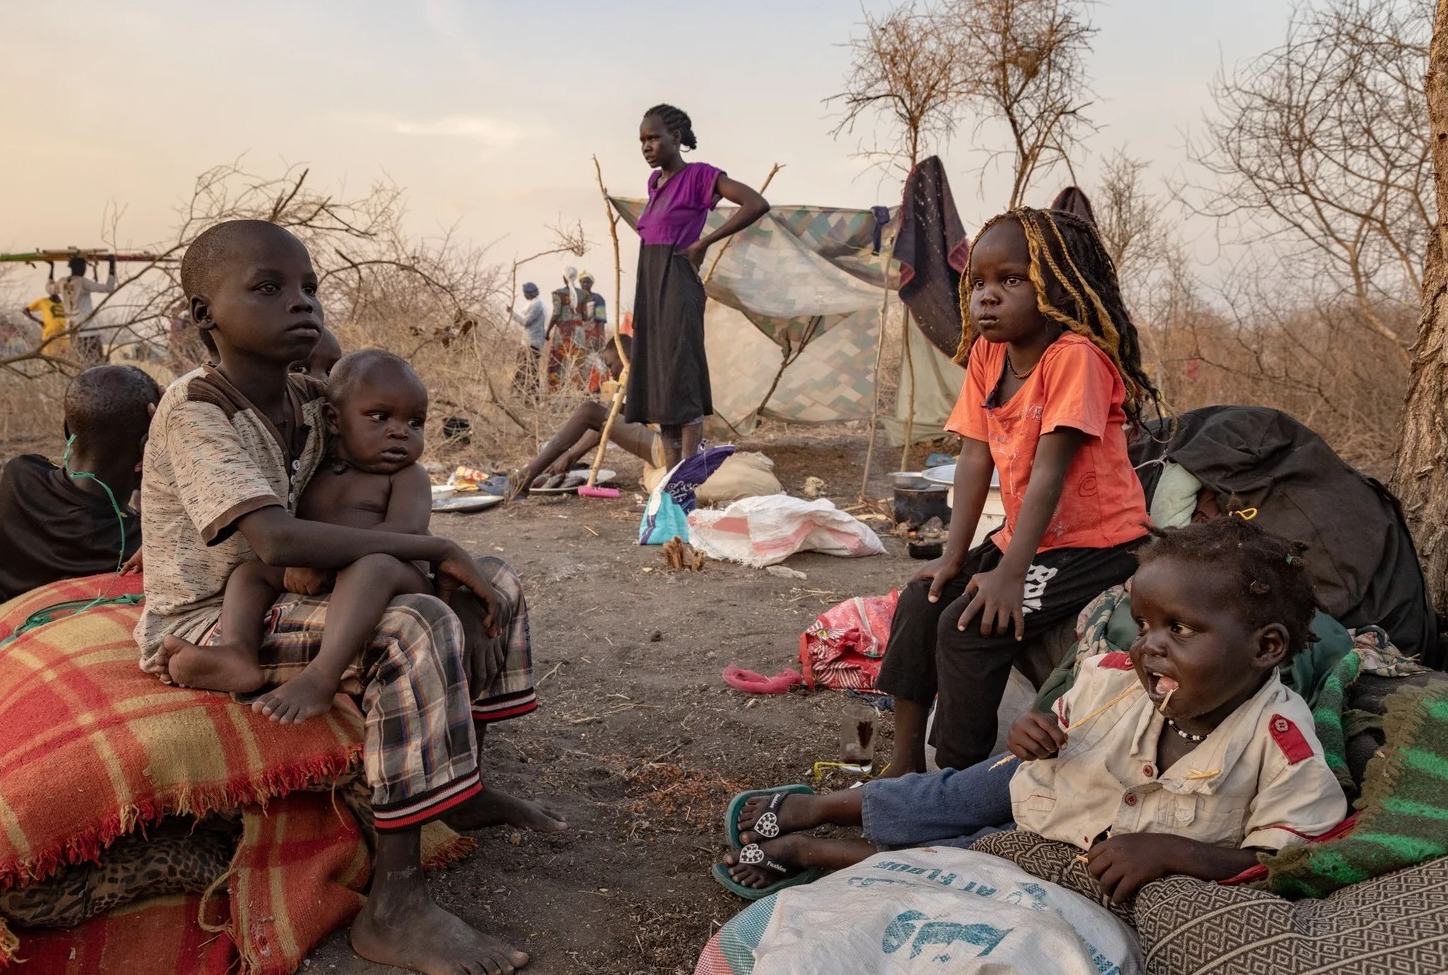 Soudan : L’appel urgent à l’aide face à la crise humanitaire en pleine ébullition